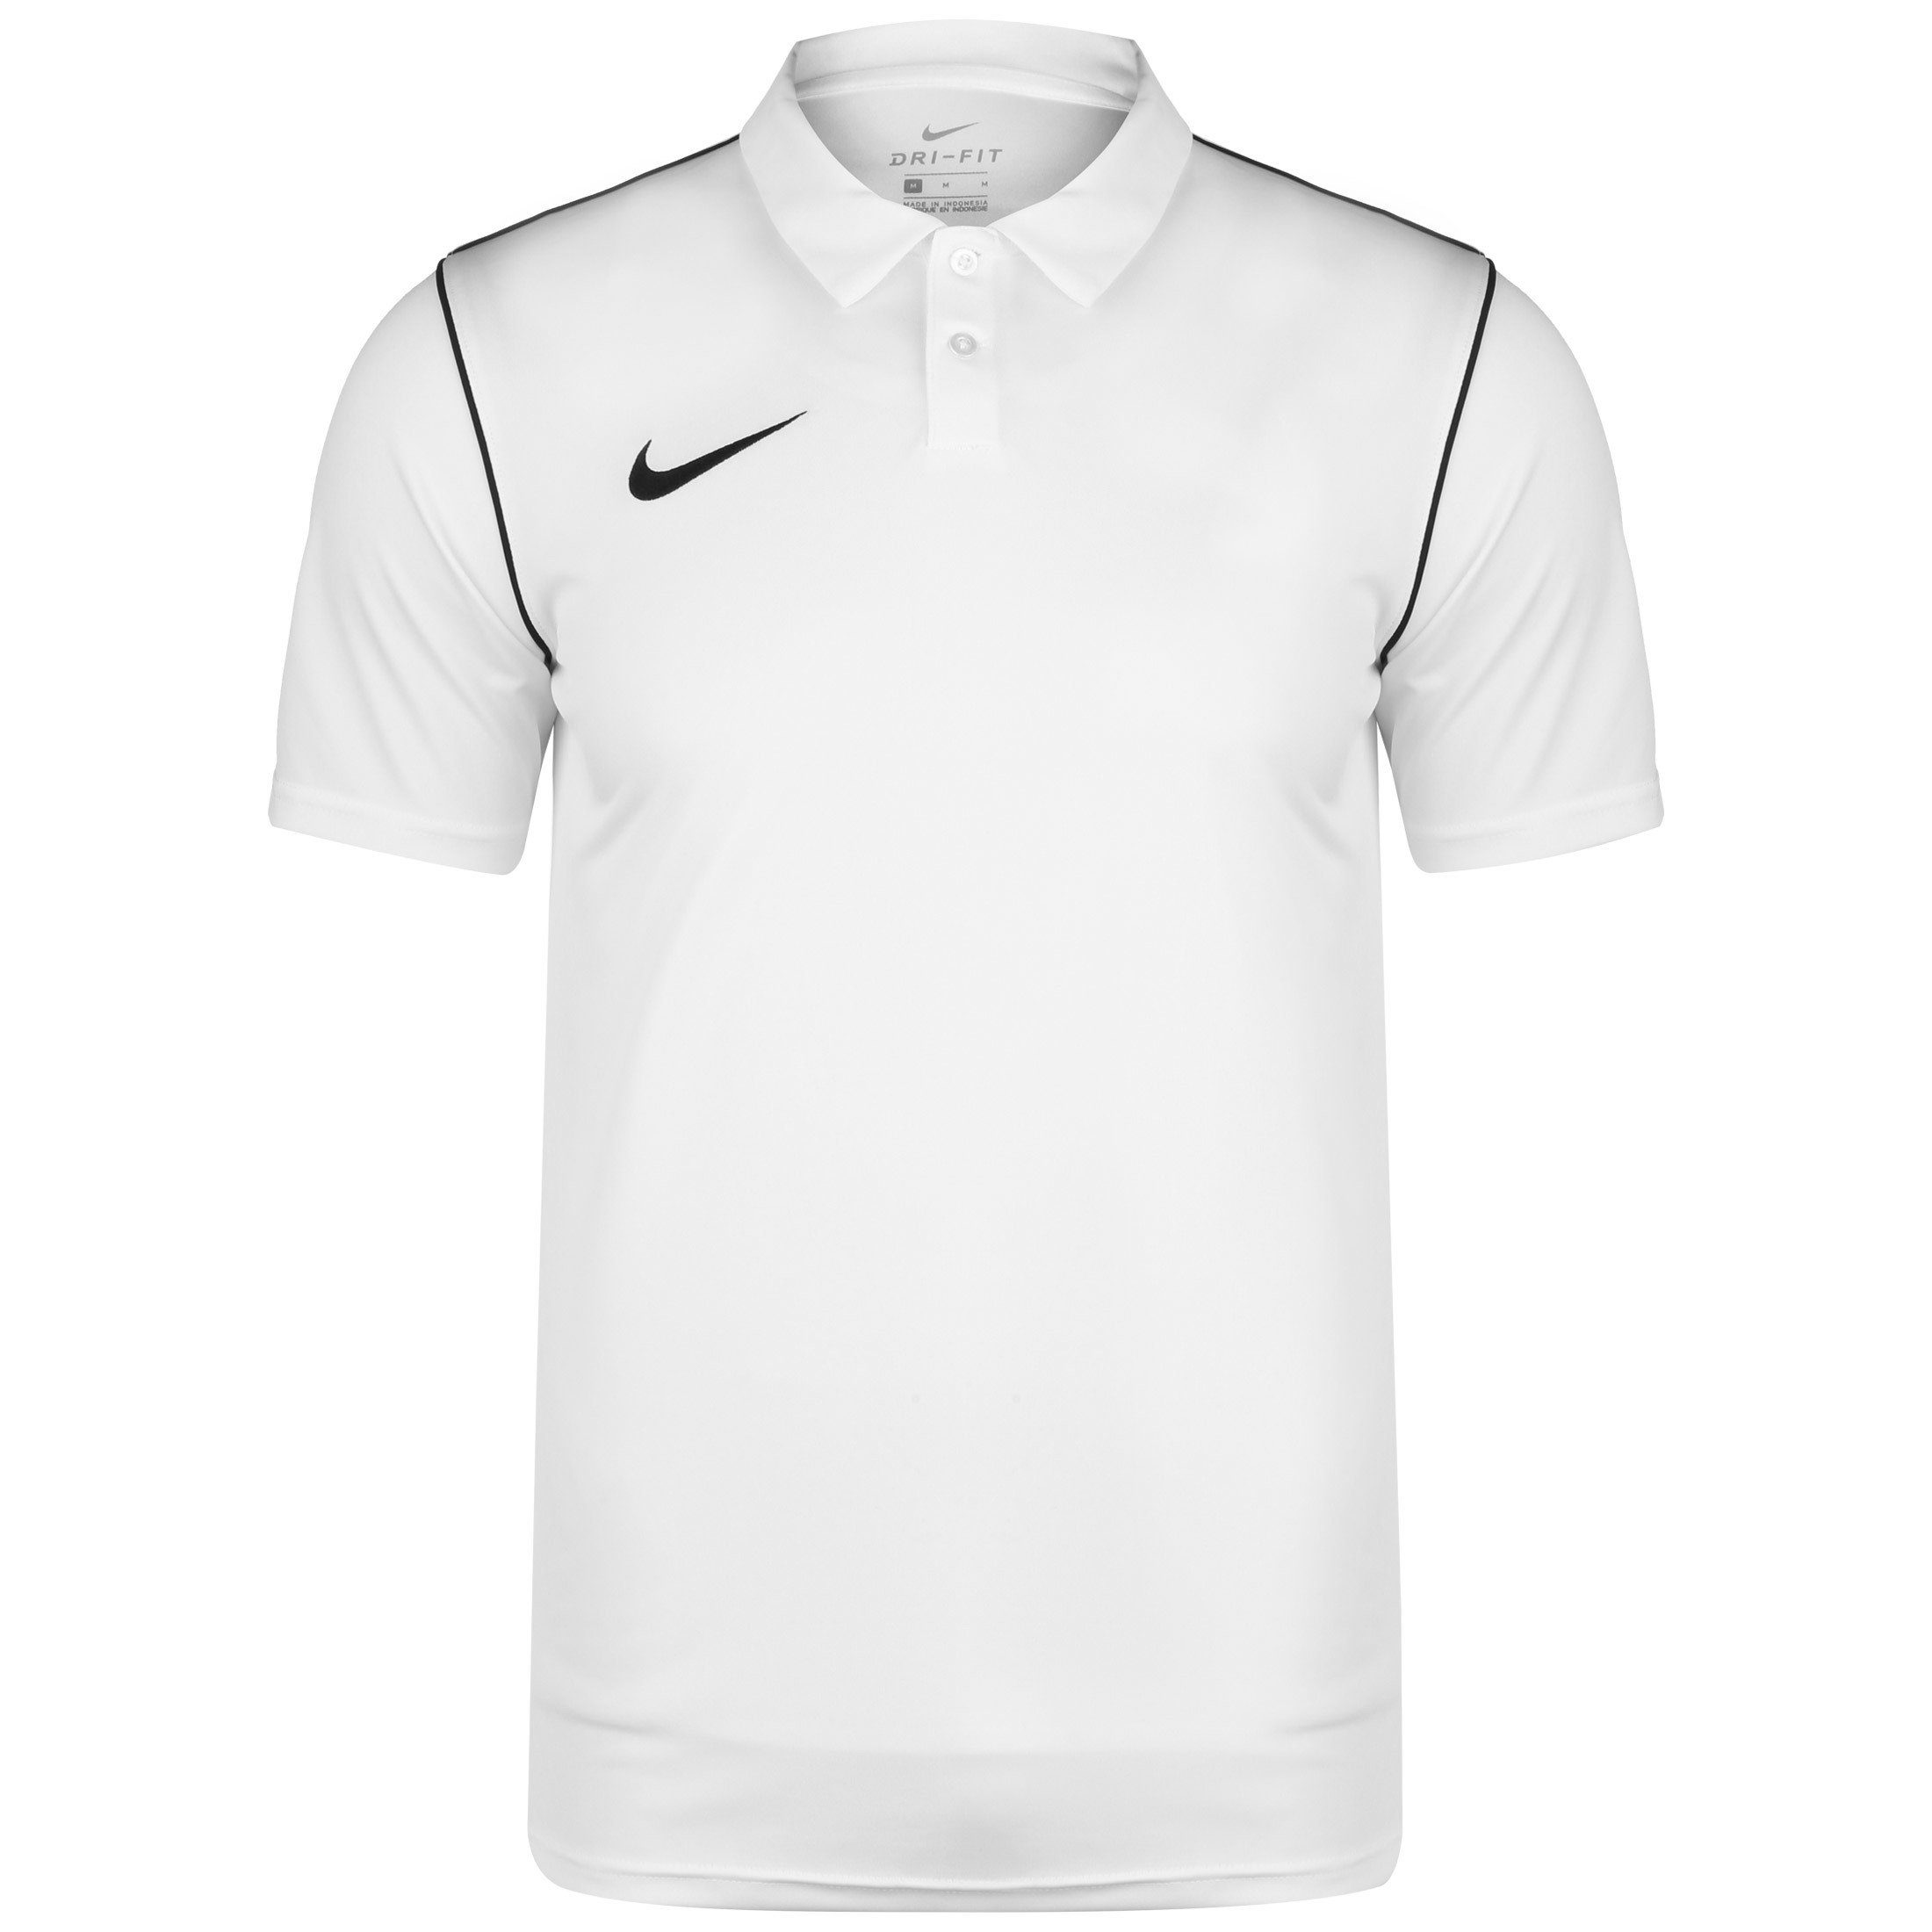 Nike Poloshirts online kaufen | OTTO